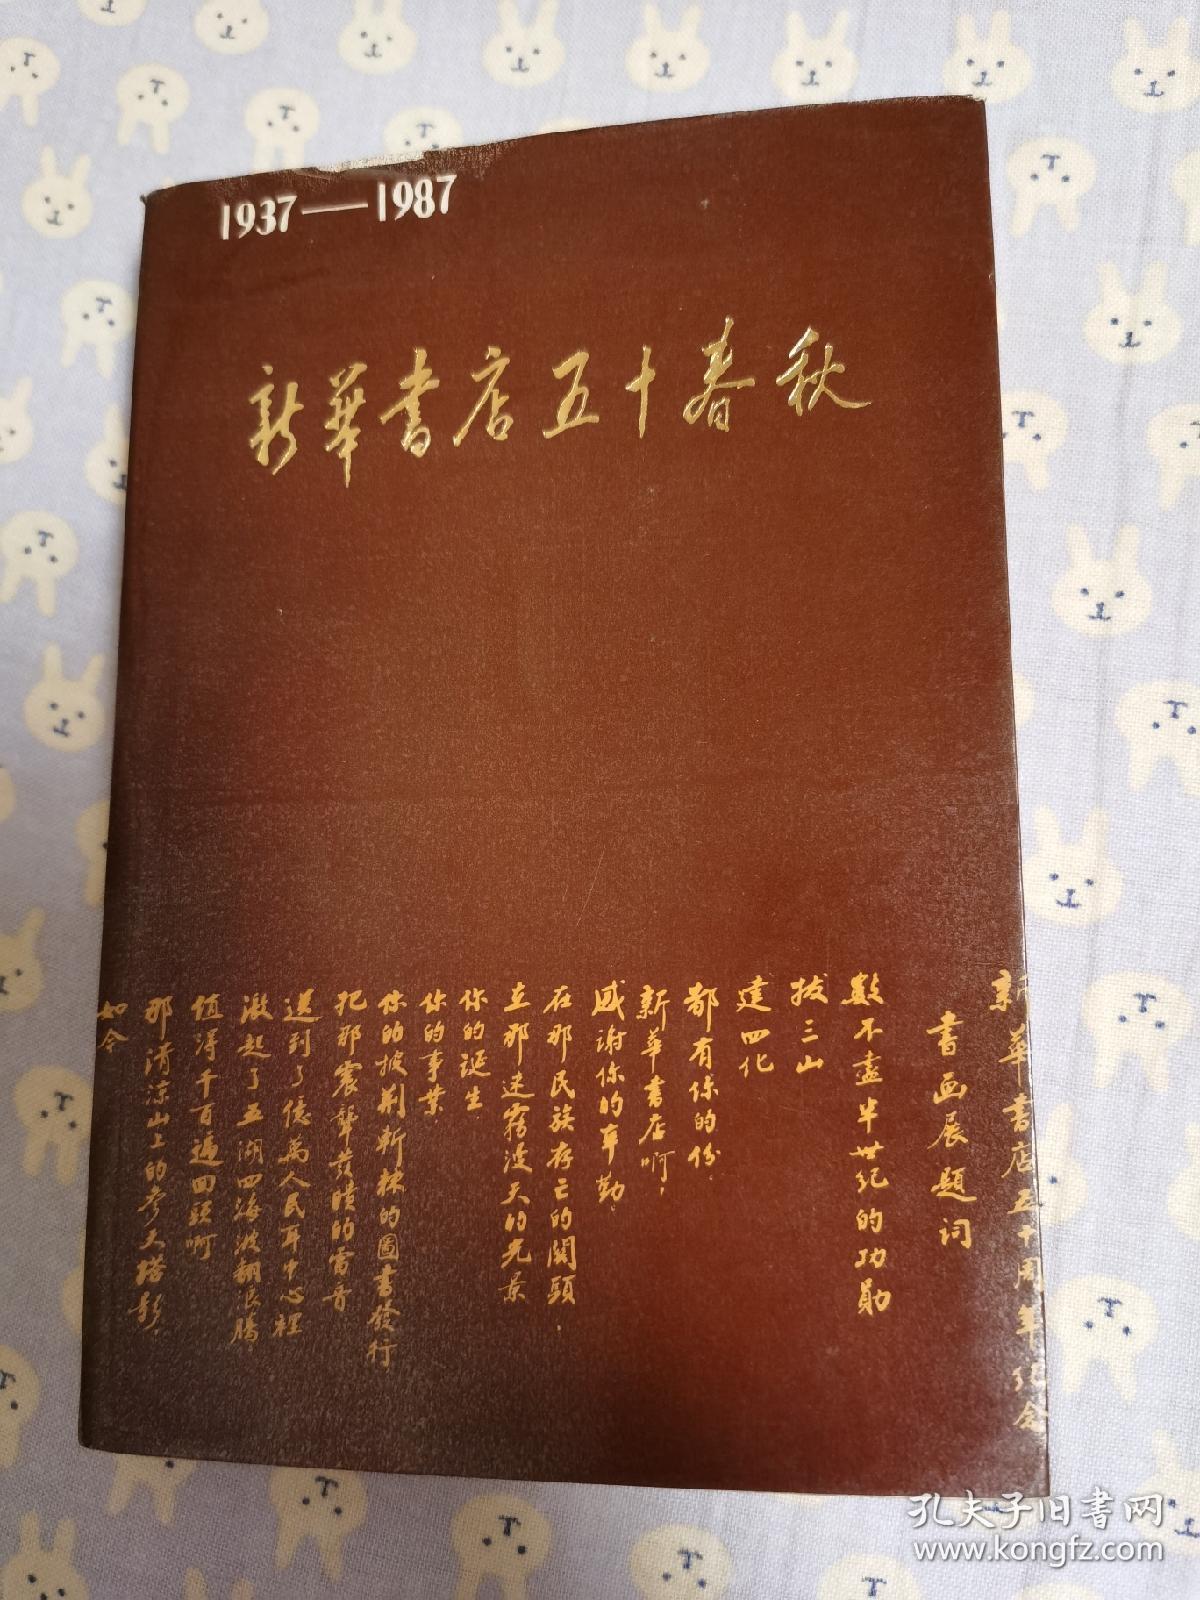 新华书店50春秋 1937至1987。